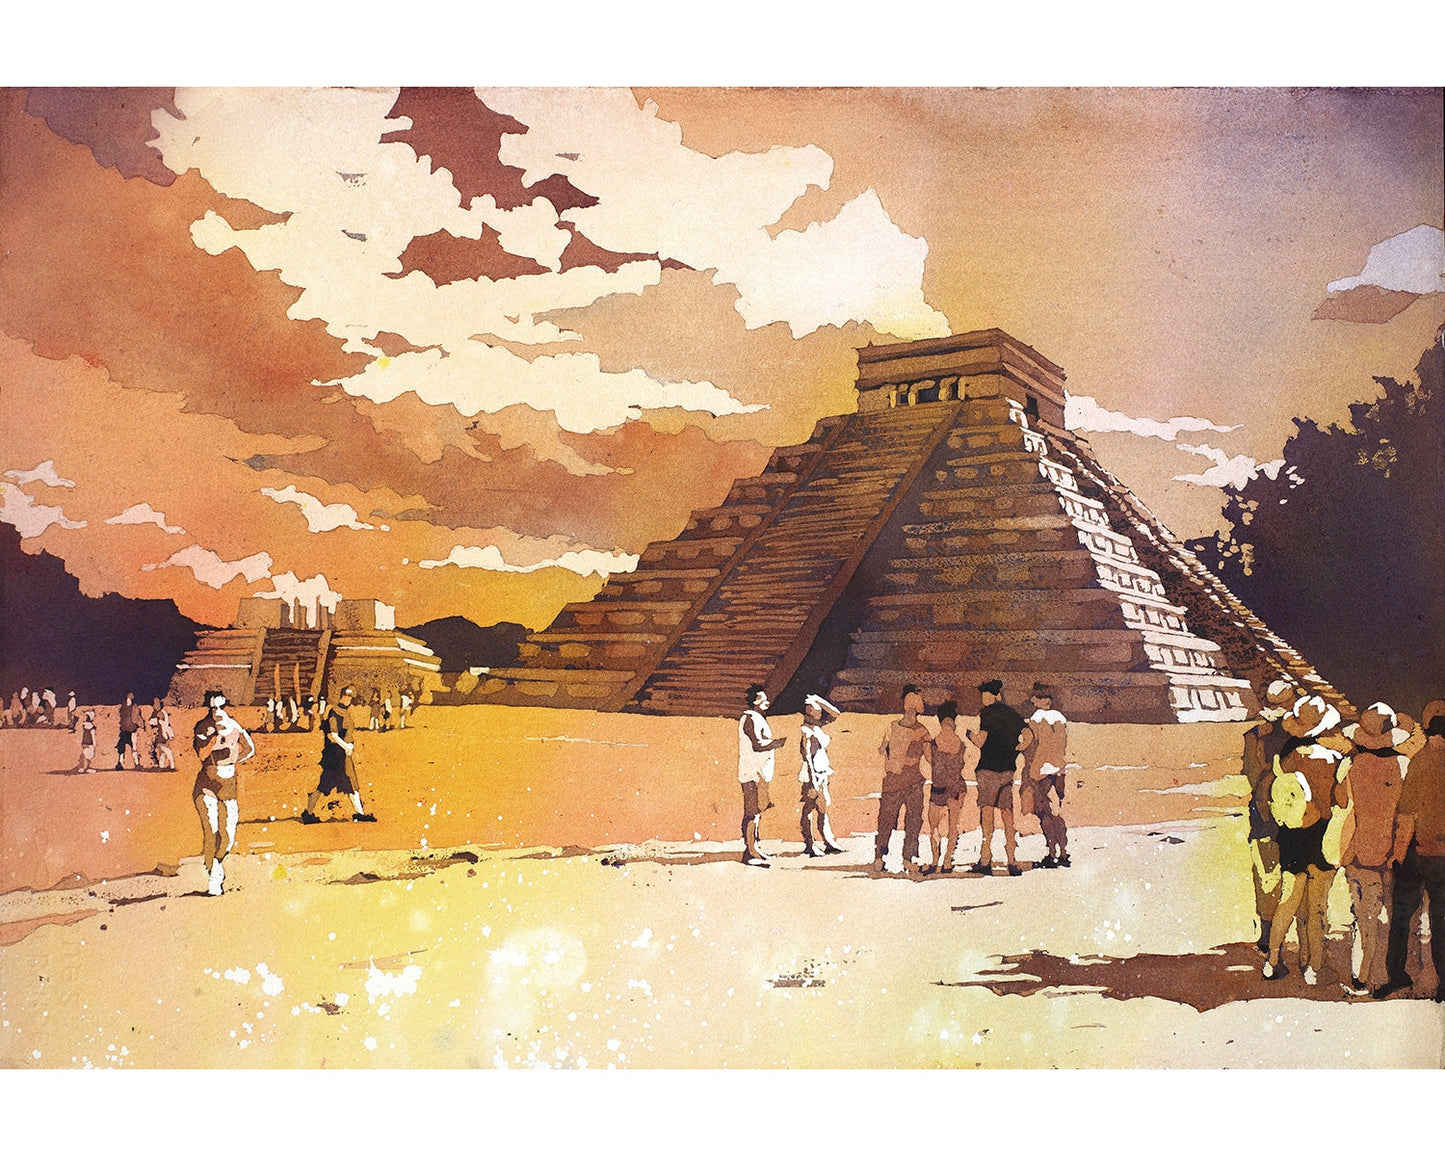 Mayan ruins at Chichen Itza, in the Yucatan Peninsula- Mexico.  Mayan ruins Chichen Itza Mexico artwork home decor watercolor (print)